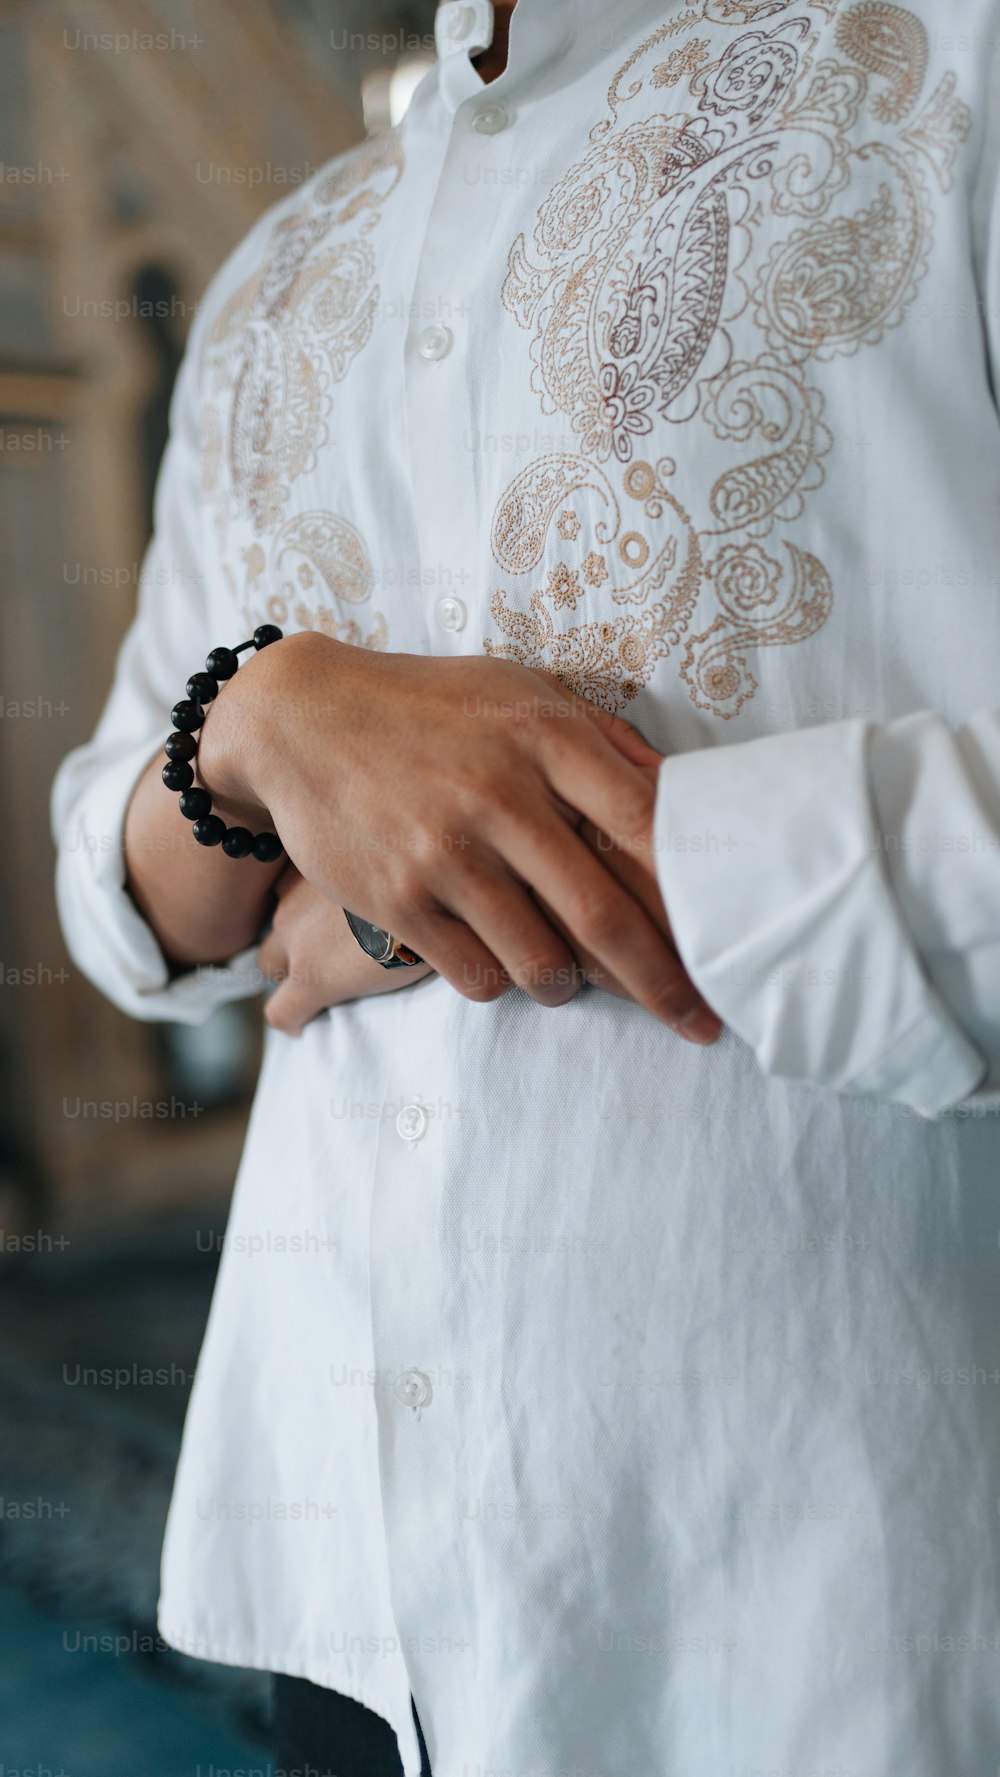 uma pessoa vestindo uma camisa branca e uma pulseira frisada